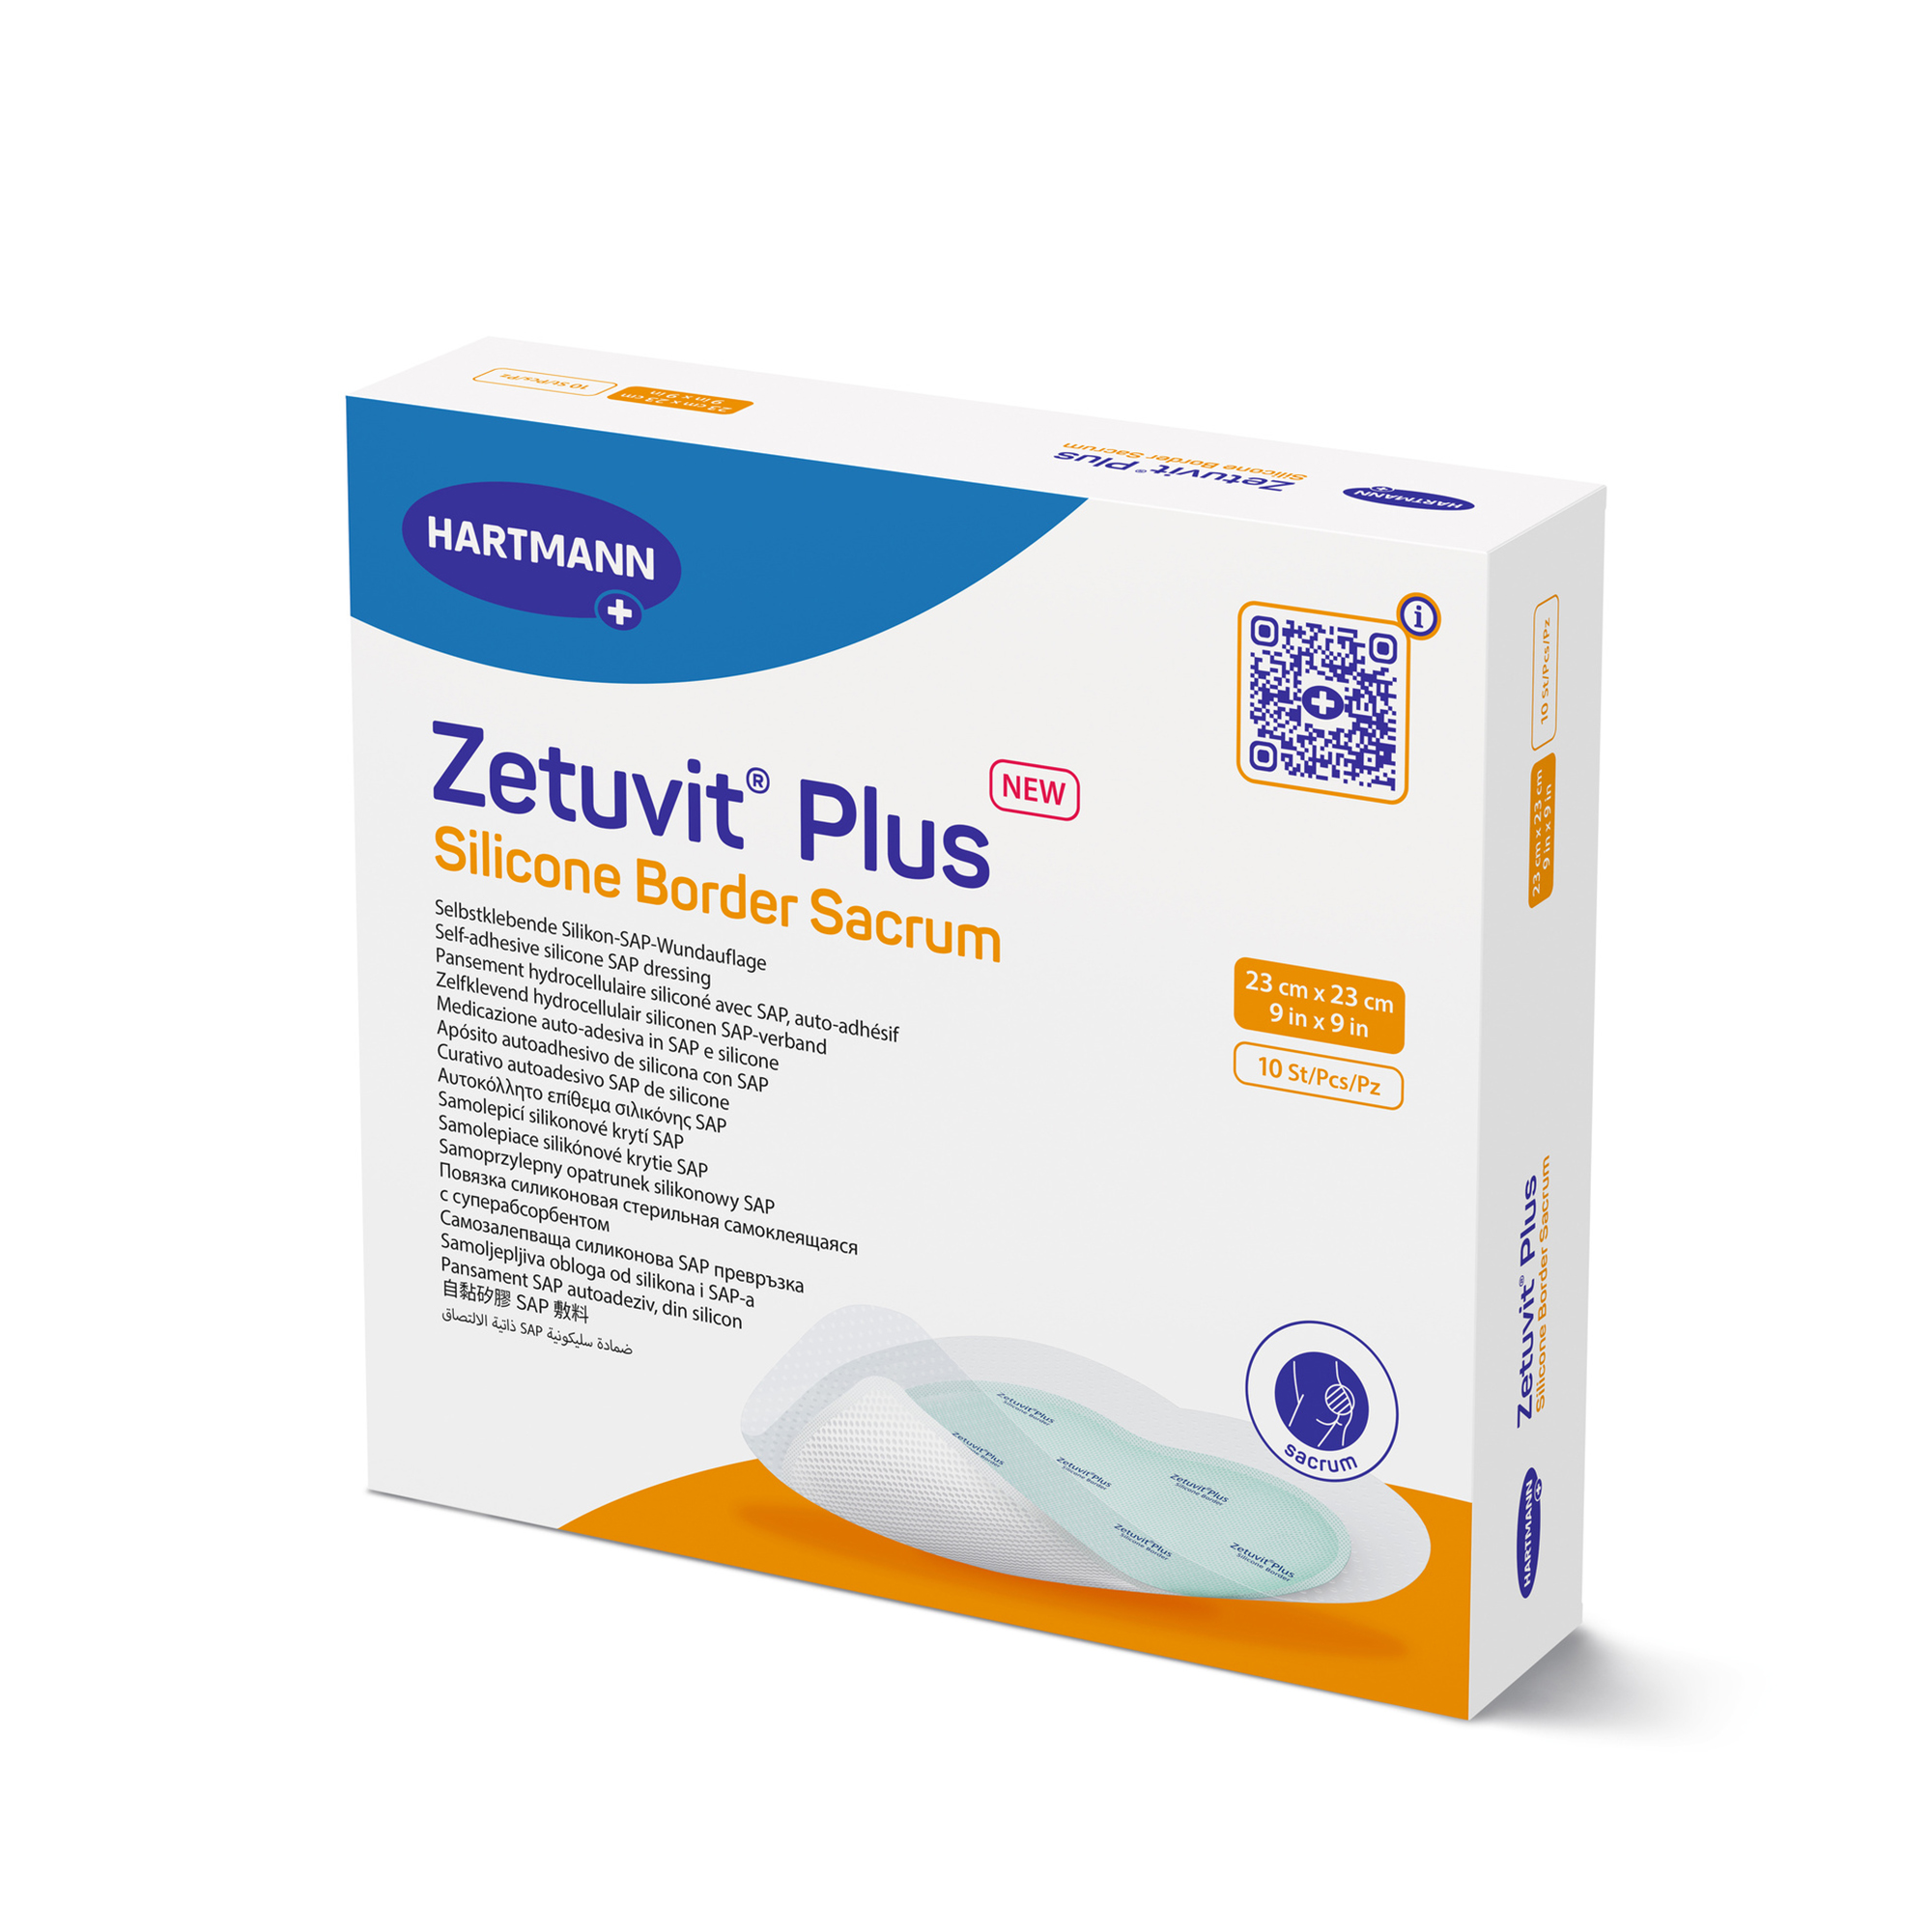 Hartmann Zetuvit® Plus Silicone Border 18 x 18 cm Sacrum, steril, einzeln